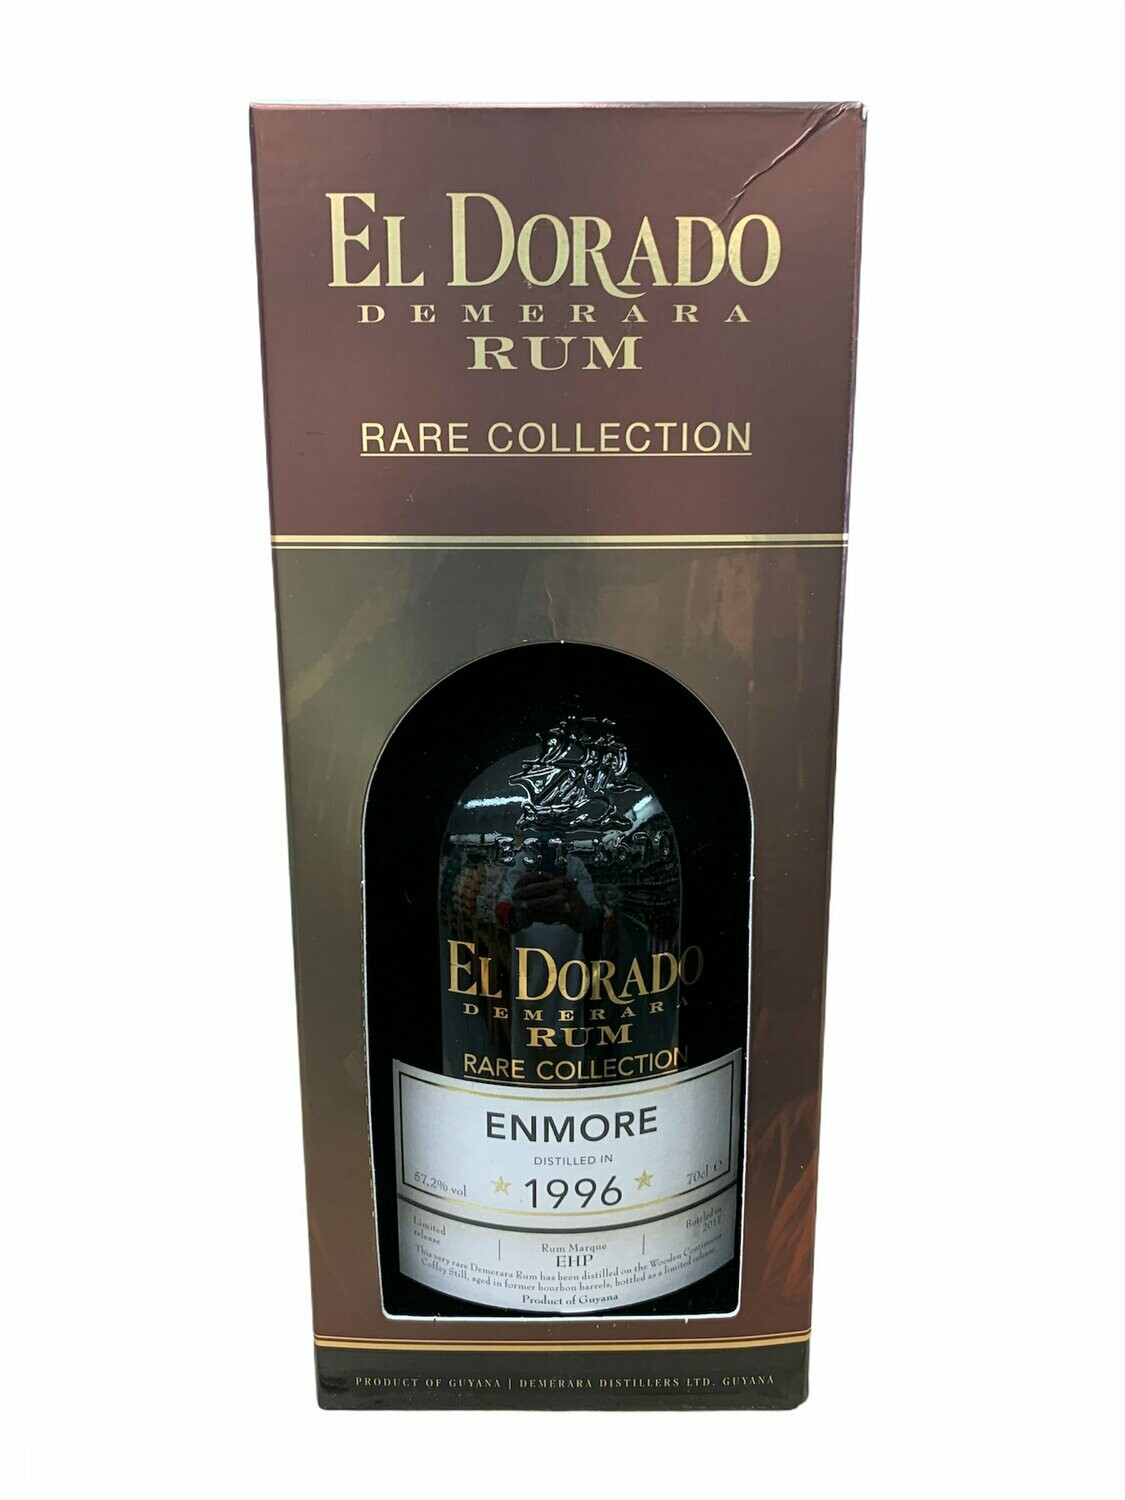 El Dorado Rum Enmore 1996 70cl 57,2% "RARE COLLECTION" "Demerara Distillers Ltd"